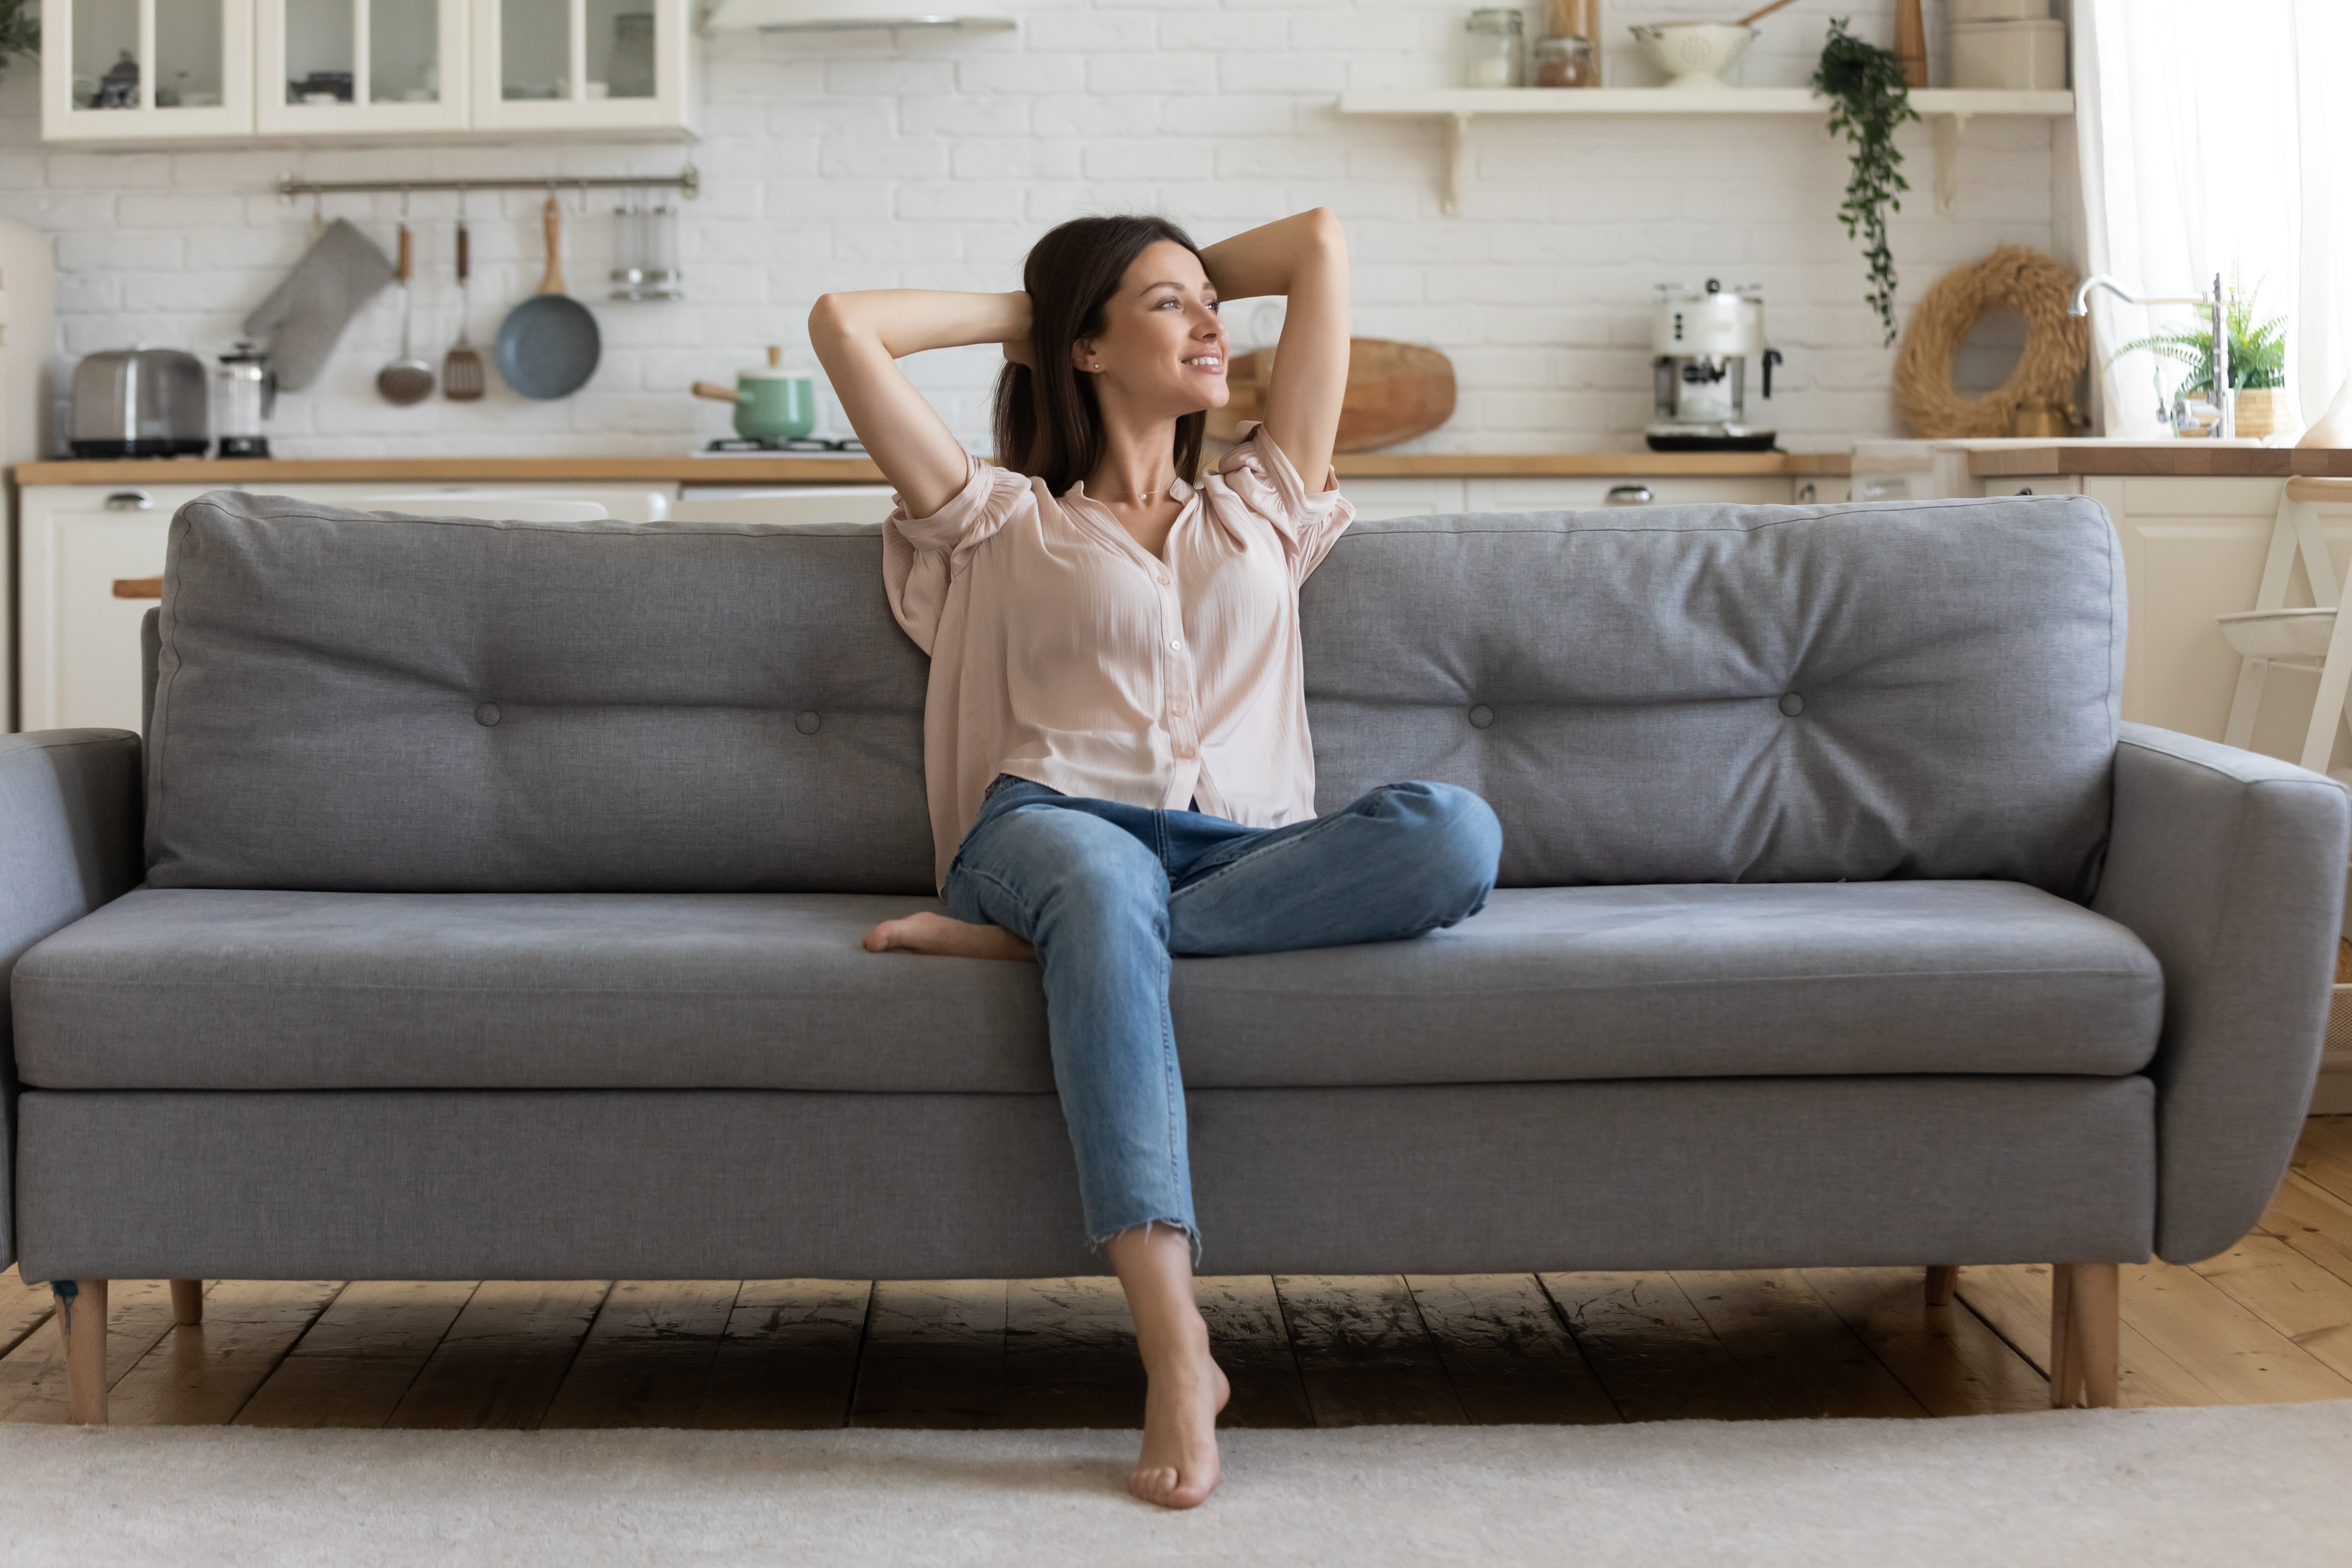 Happy woman on sofa | Shutterstock